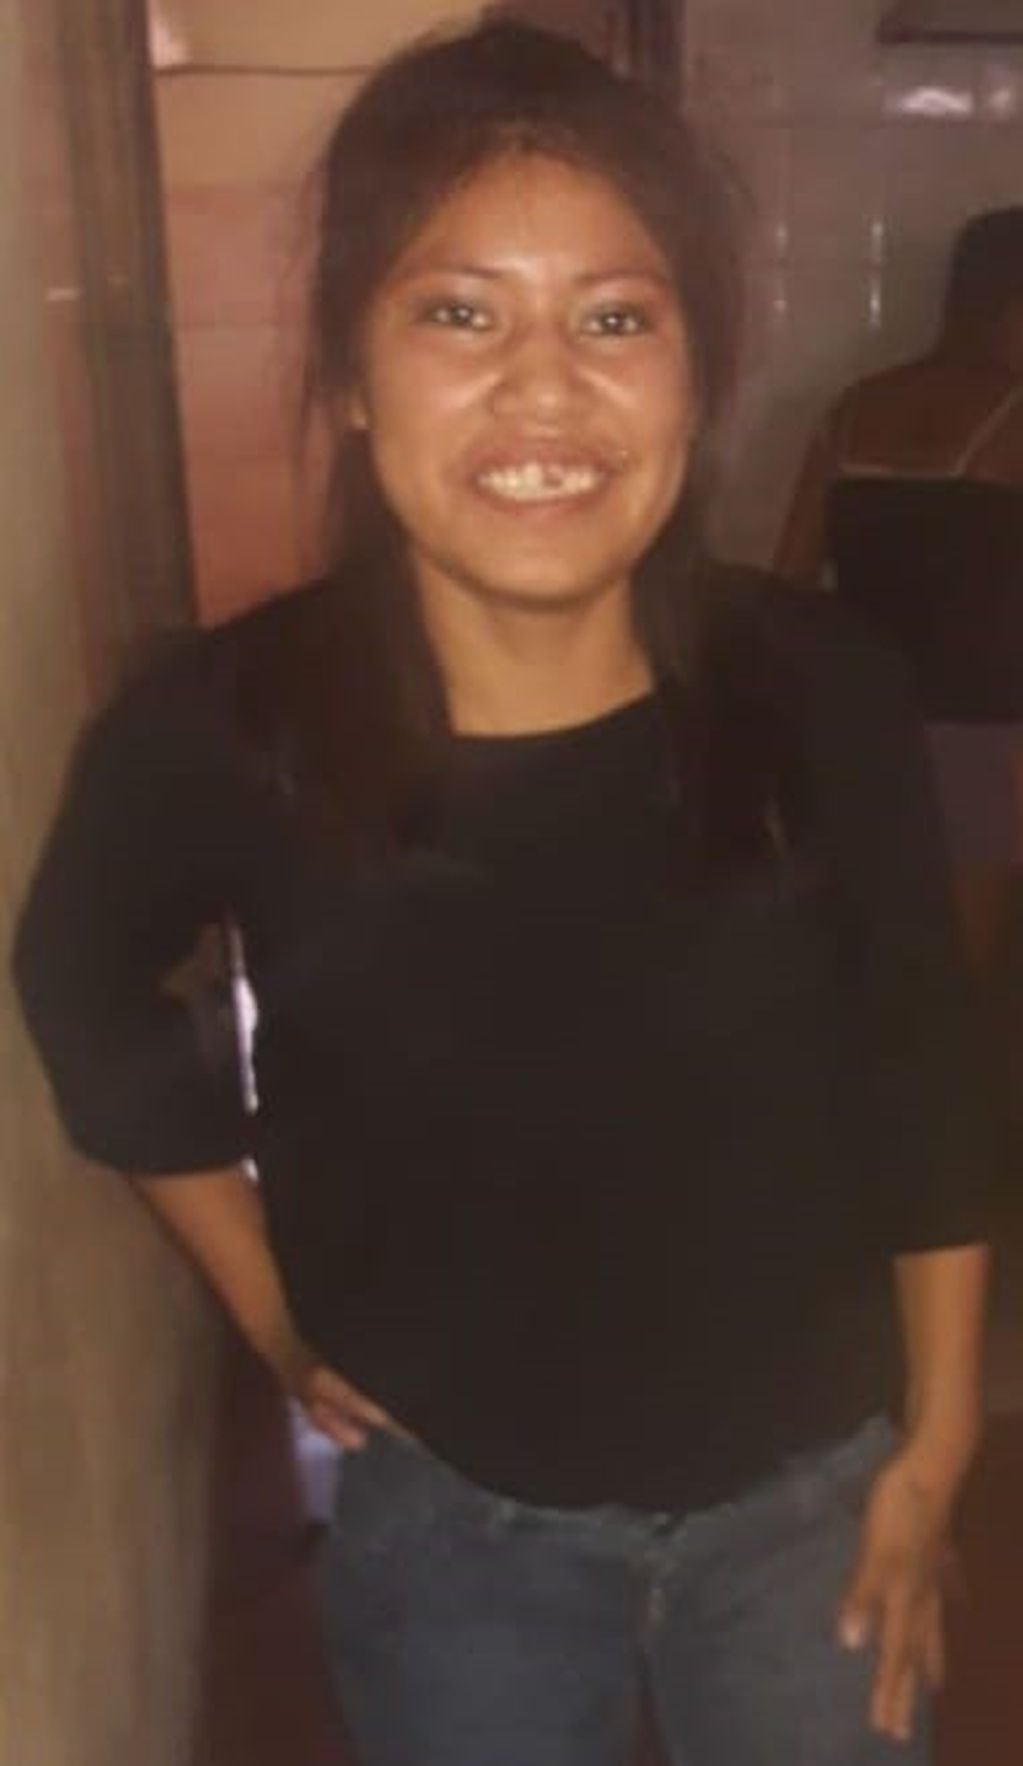 La joven de 16 años, Ana María Ignacio, desapareció de su casa en Tartagal el jueves pasado. (Policía de Salta)